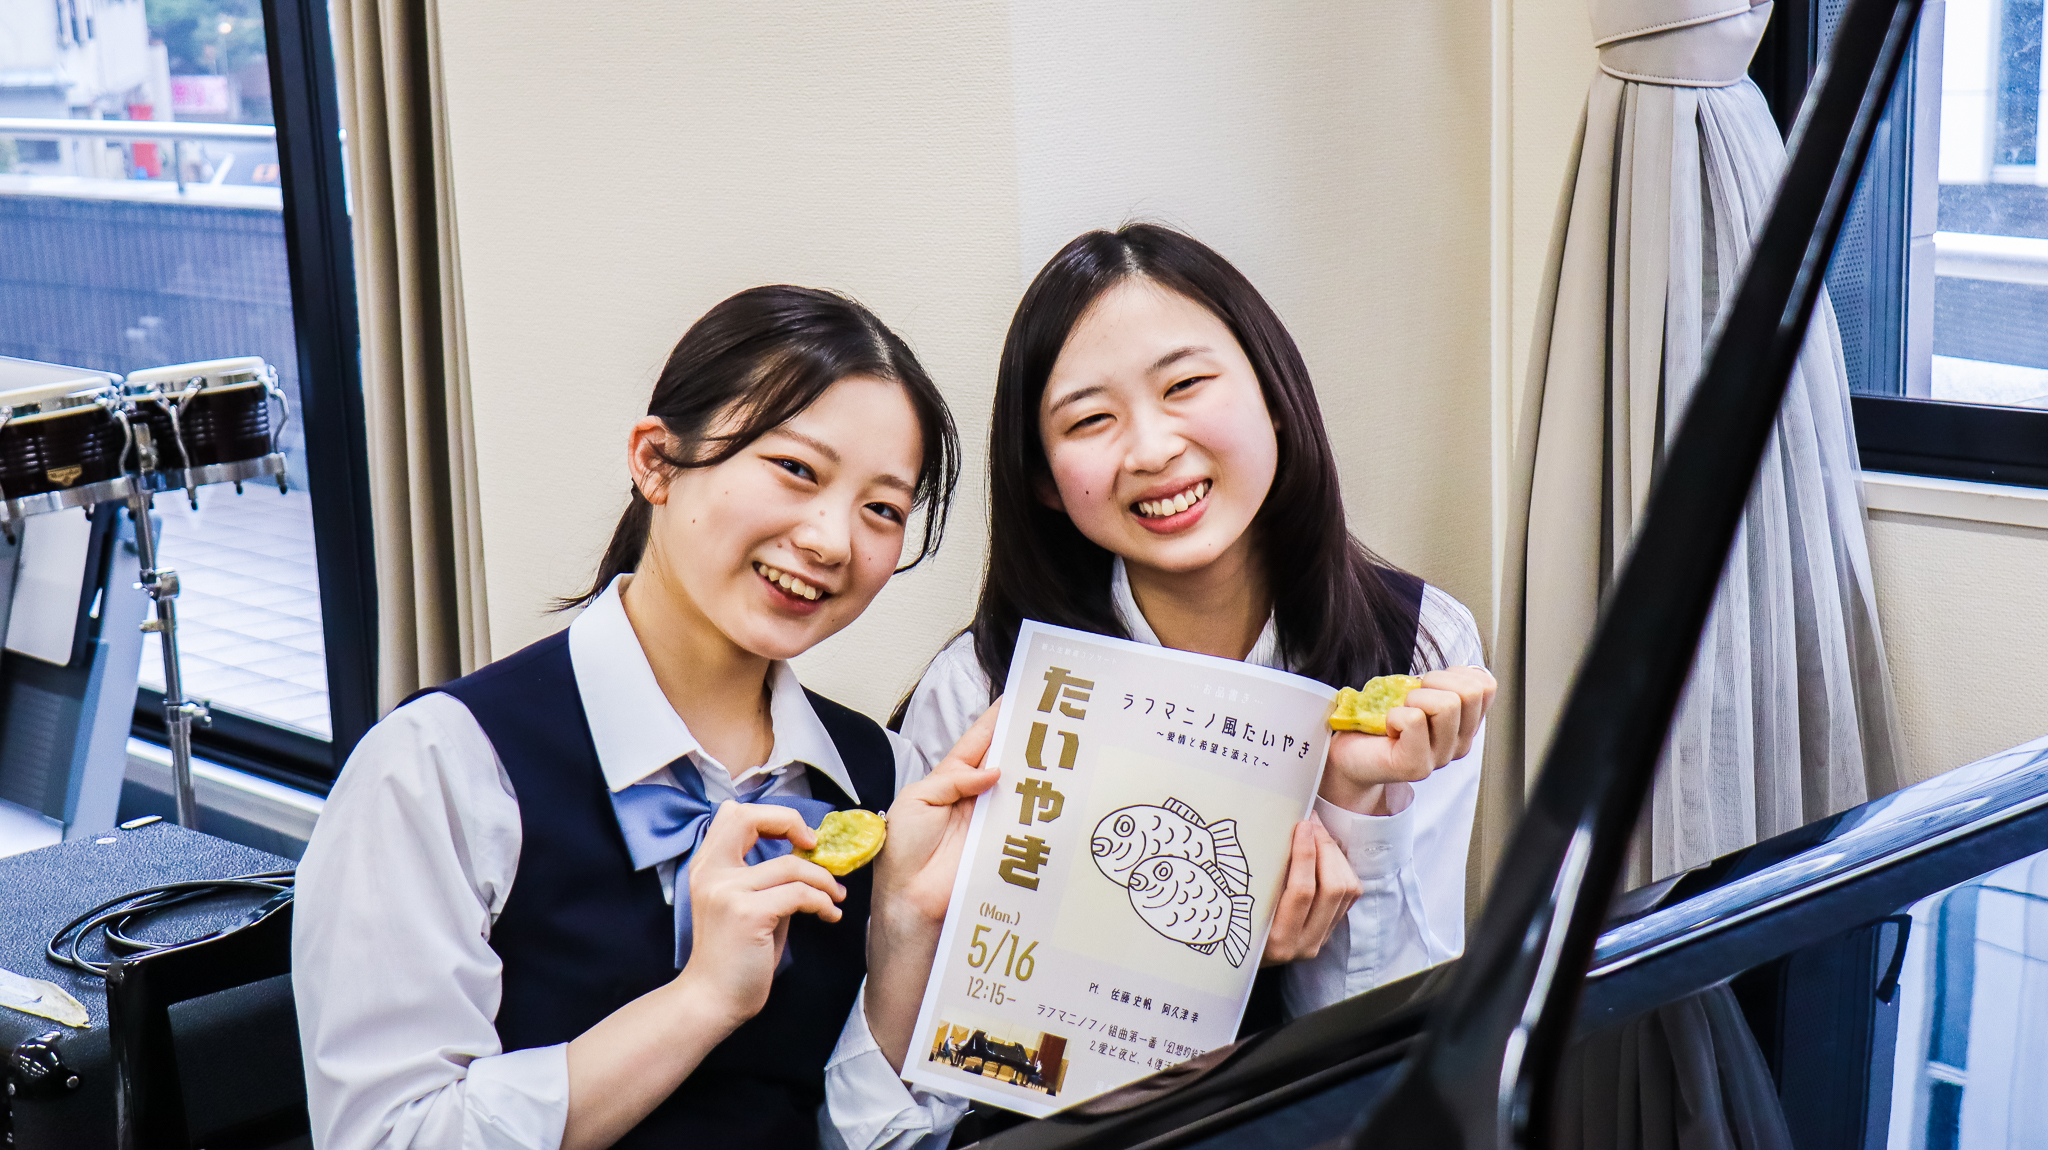 功労賞の副賞で受け取ったお揃いのたいやきキーホルダーと、高3の新歓に出演した際のポスター（阿久津さん作）と、満面の笑顔の2人。